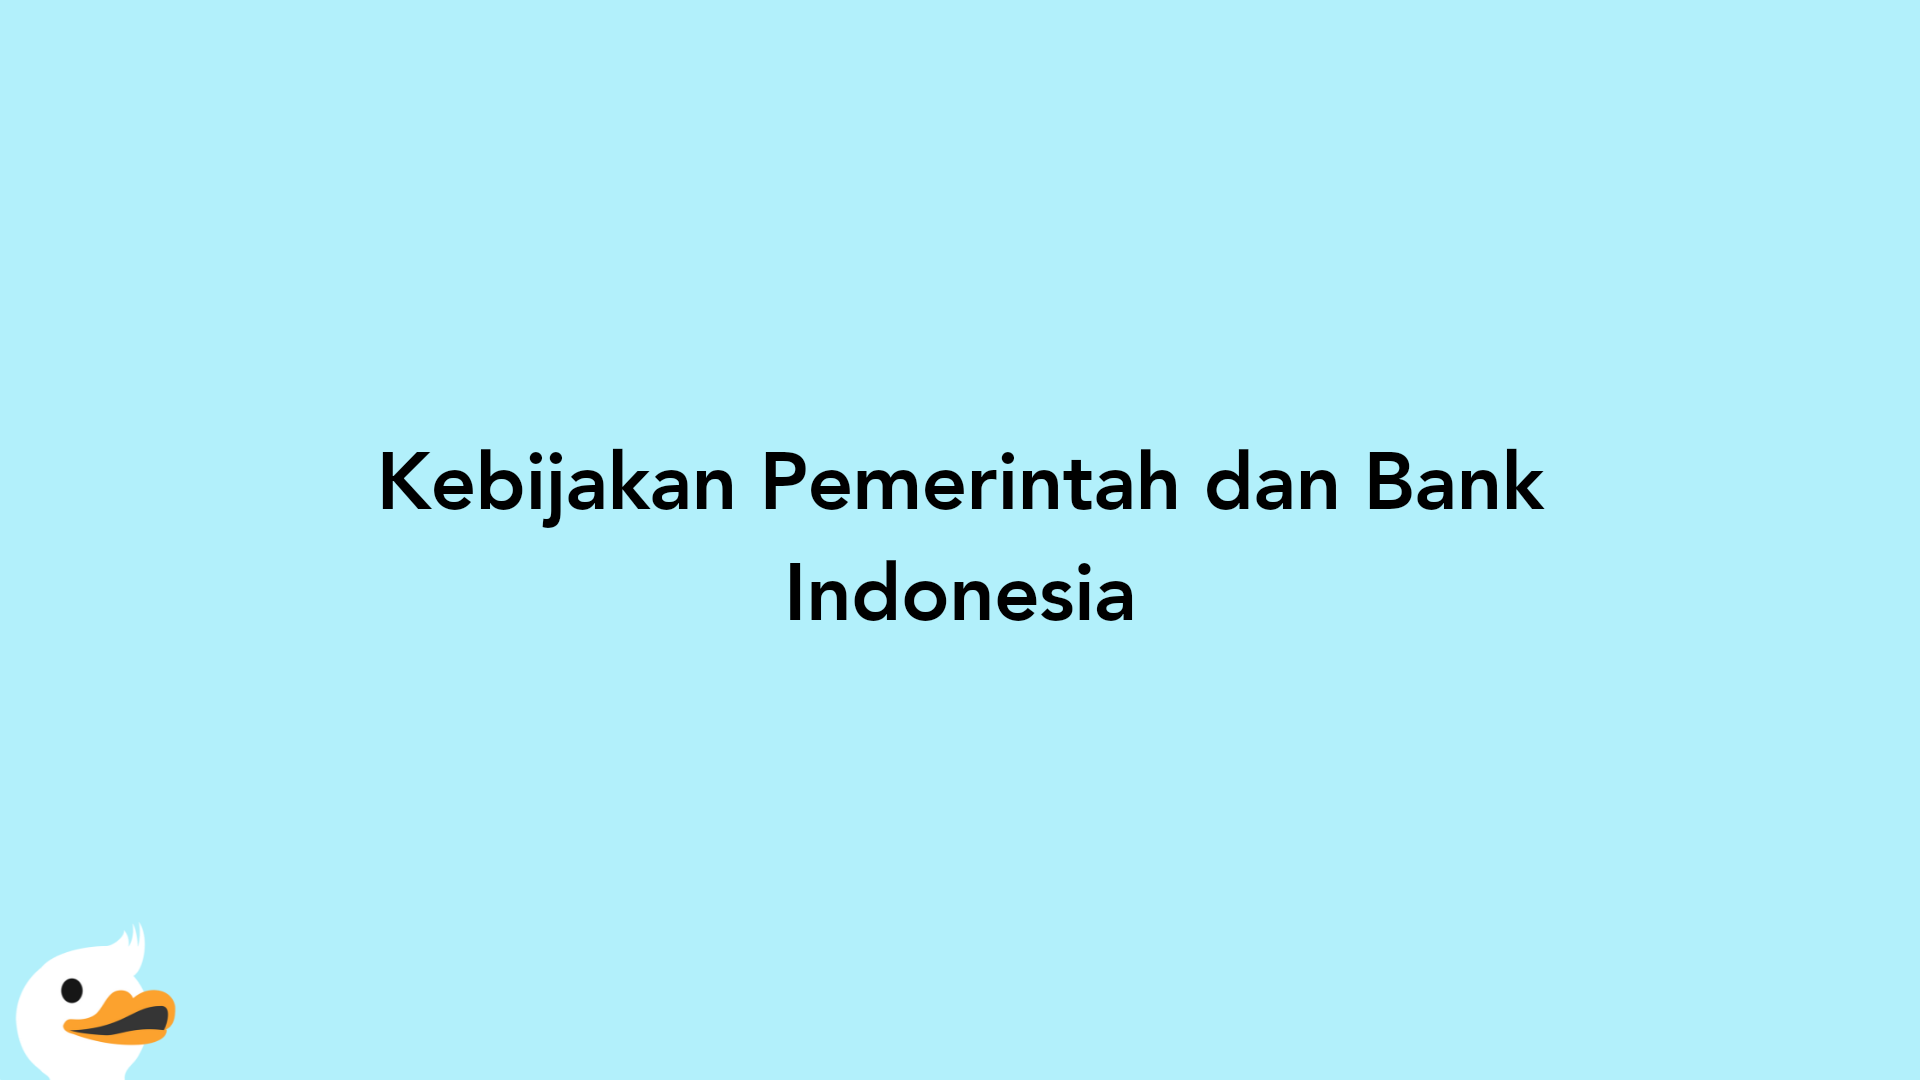 Kebijakan Pemerintah dan Bank Indonesia